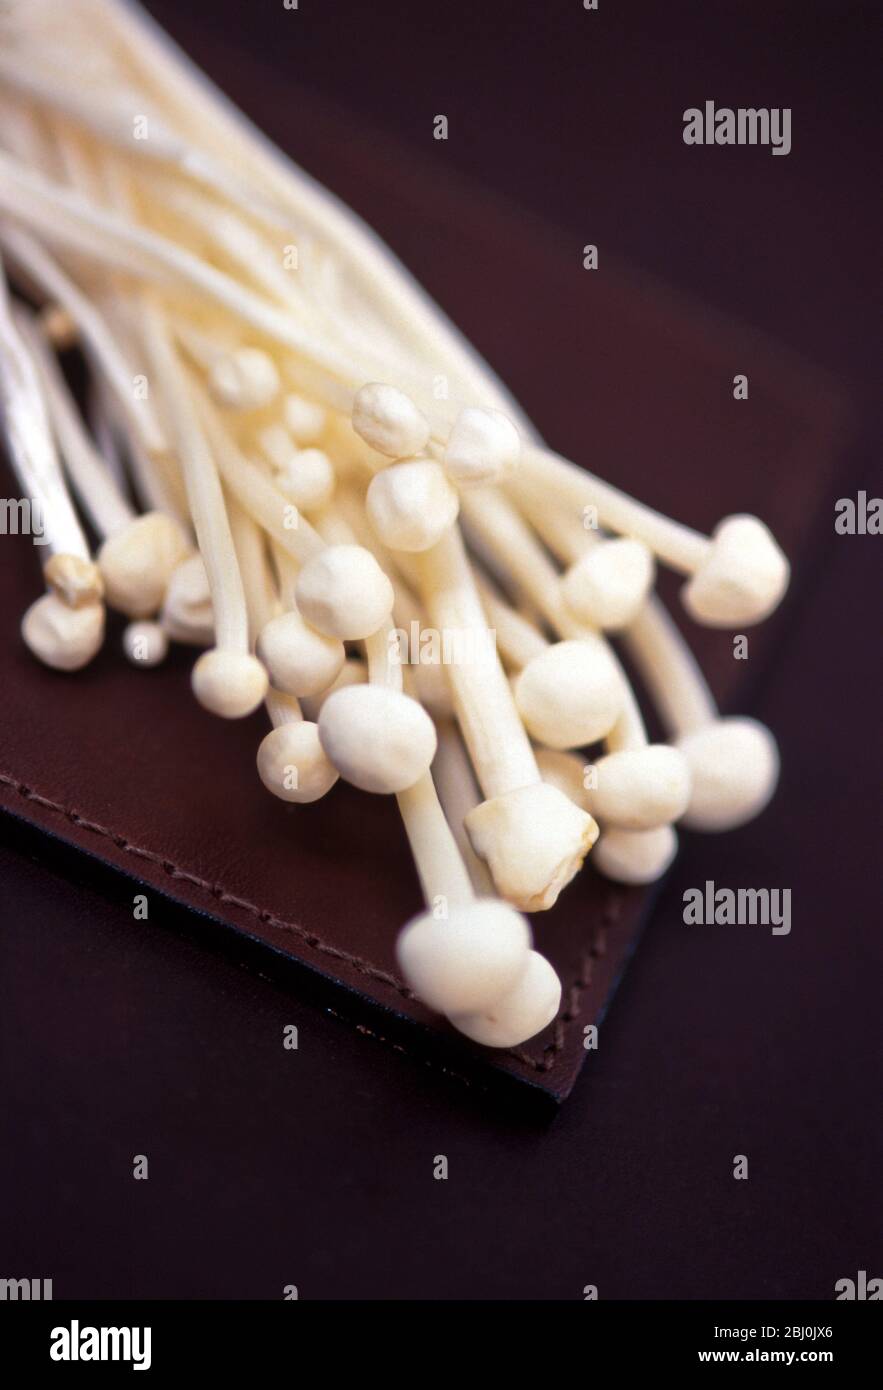 Detalle de setas enoki sobre fondo marrón. El Enotiake es una larga y fina setas blancas que se utilizan en las cocinas asiáticas, particularmente las de Japón, Corea Foto de stock